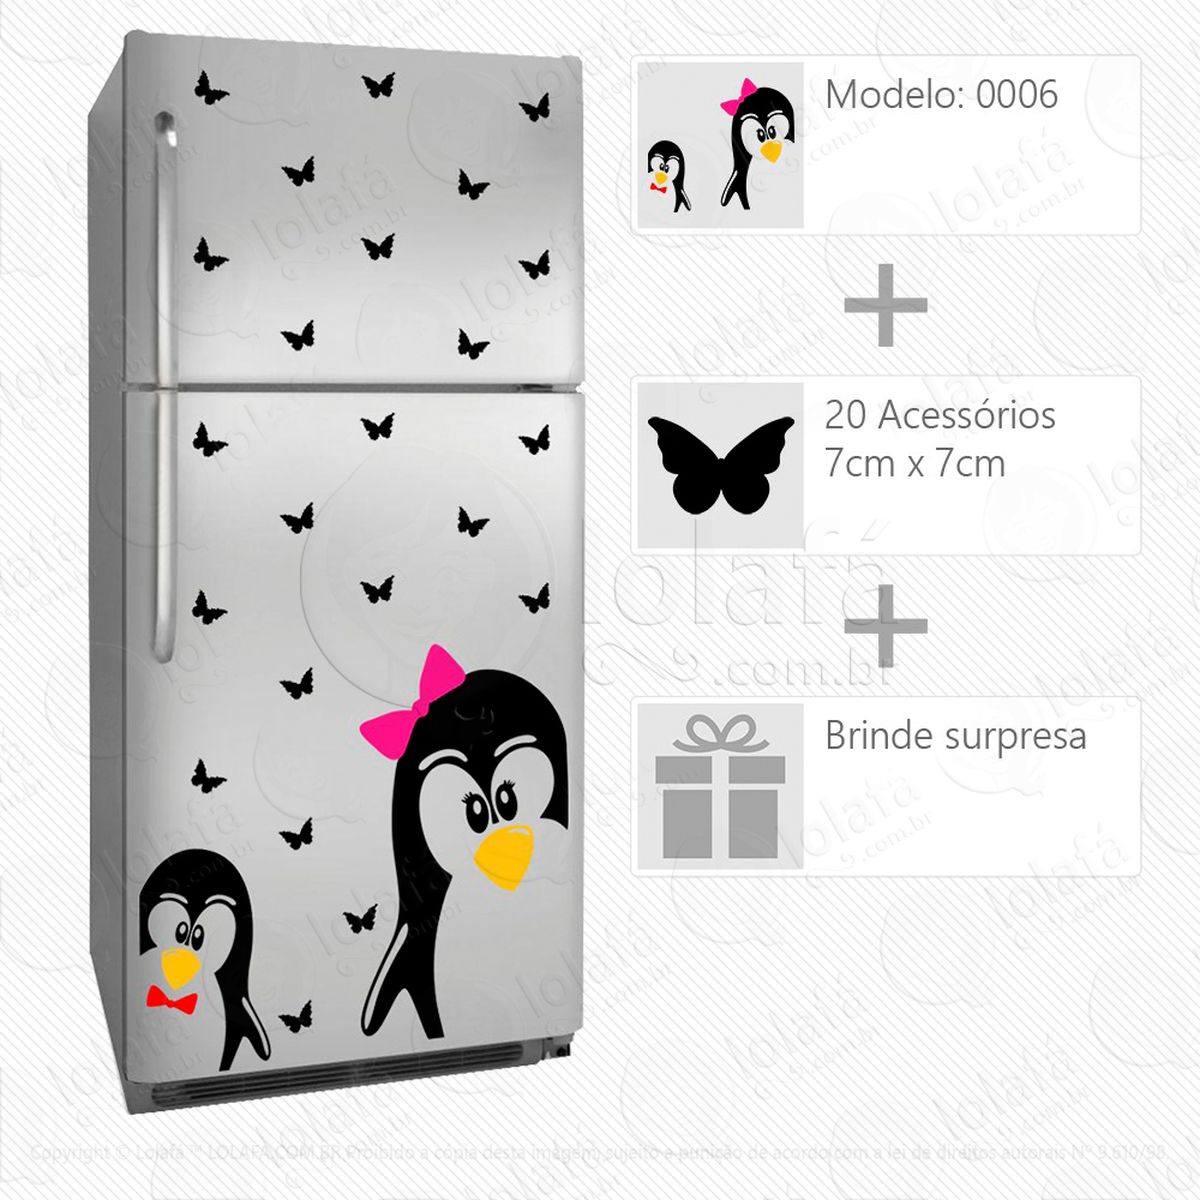 pinguins adesivo para geladeira e frigobar - mod:6